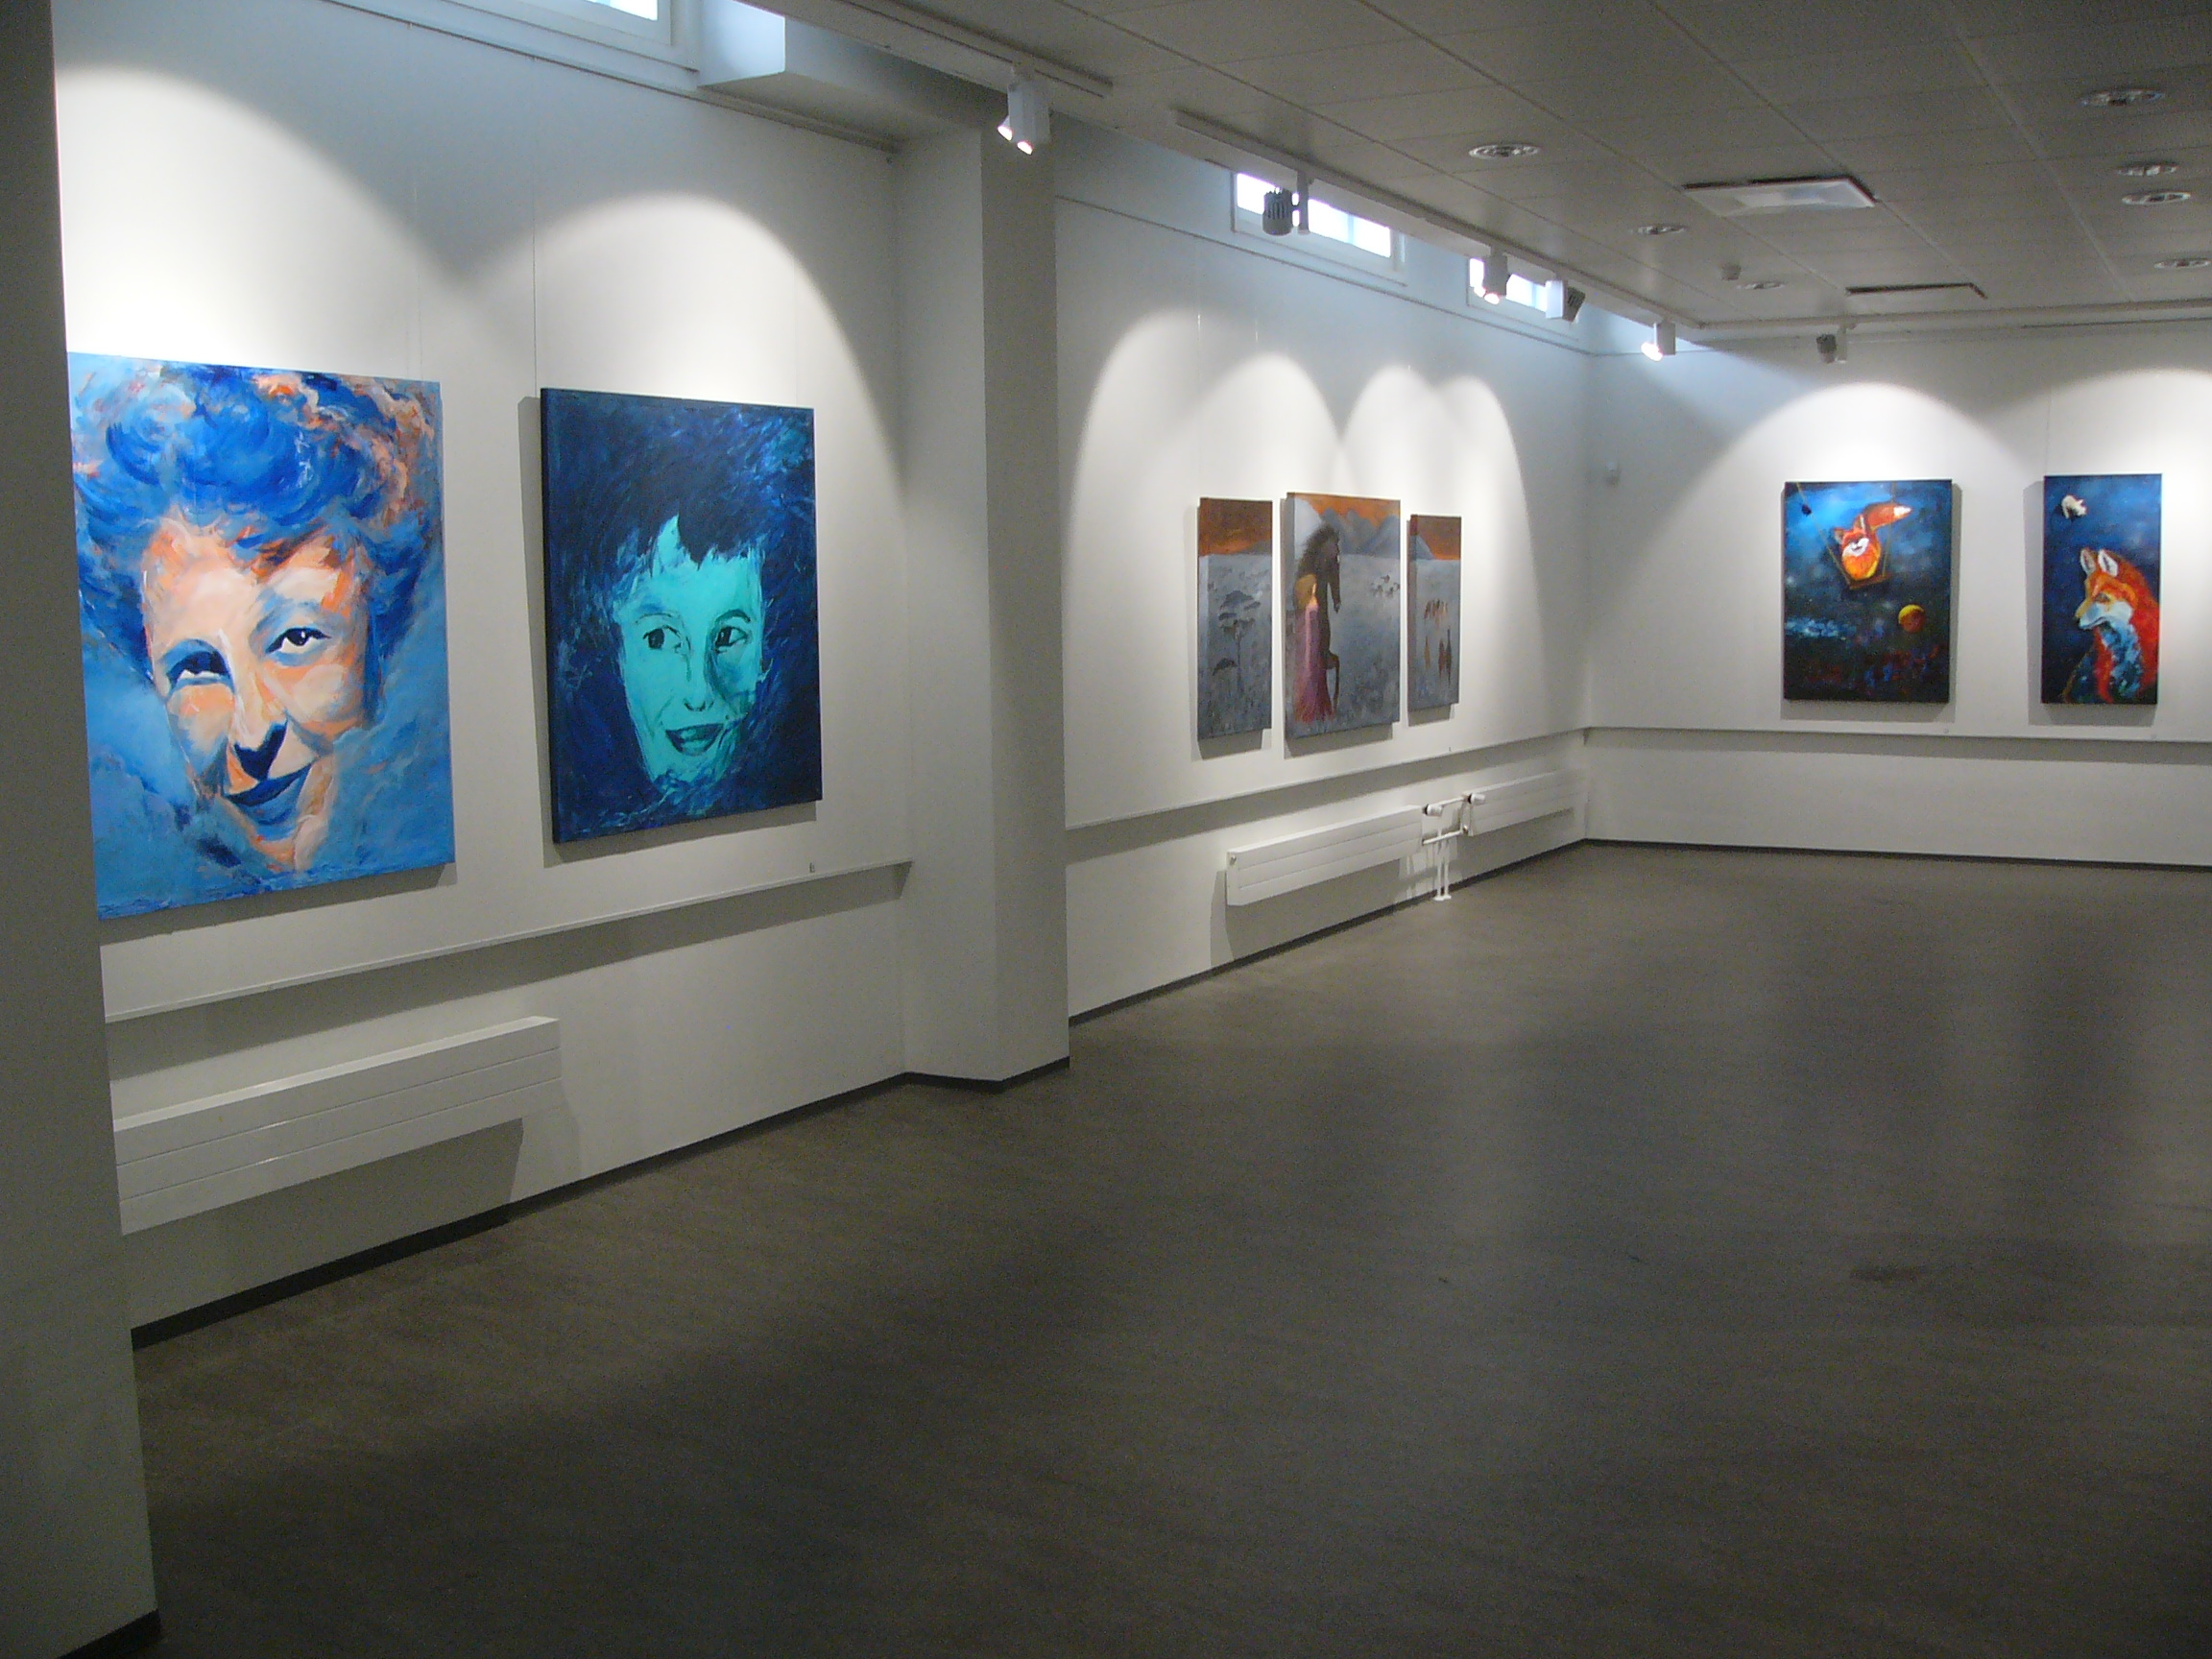 Pirkan opiston kuvataidekoulun vuosinäyttely Hetki itselle on esillä Galleria 2:n virtuaaligalleriassa